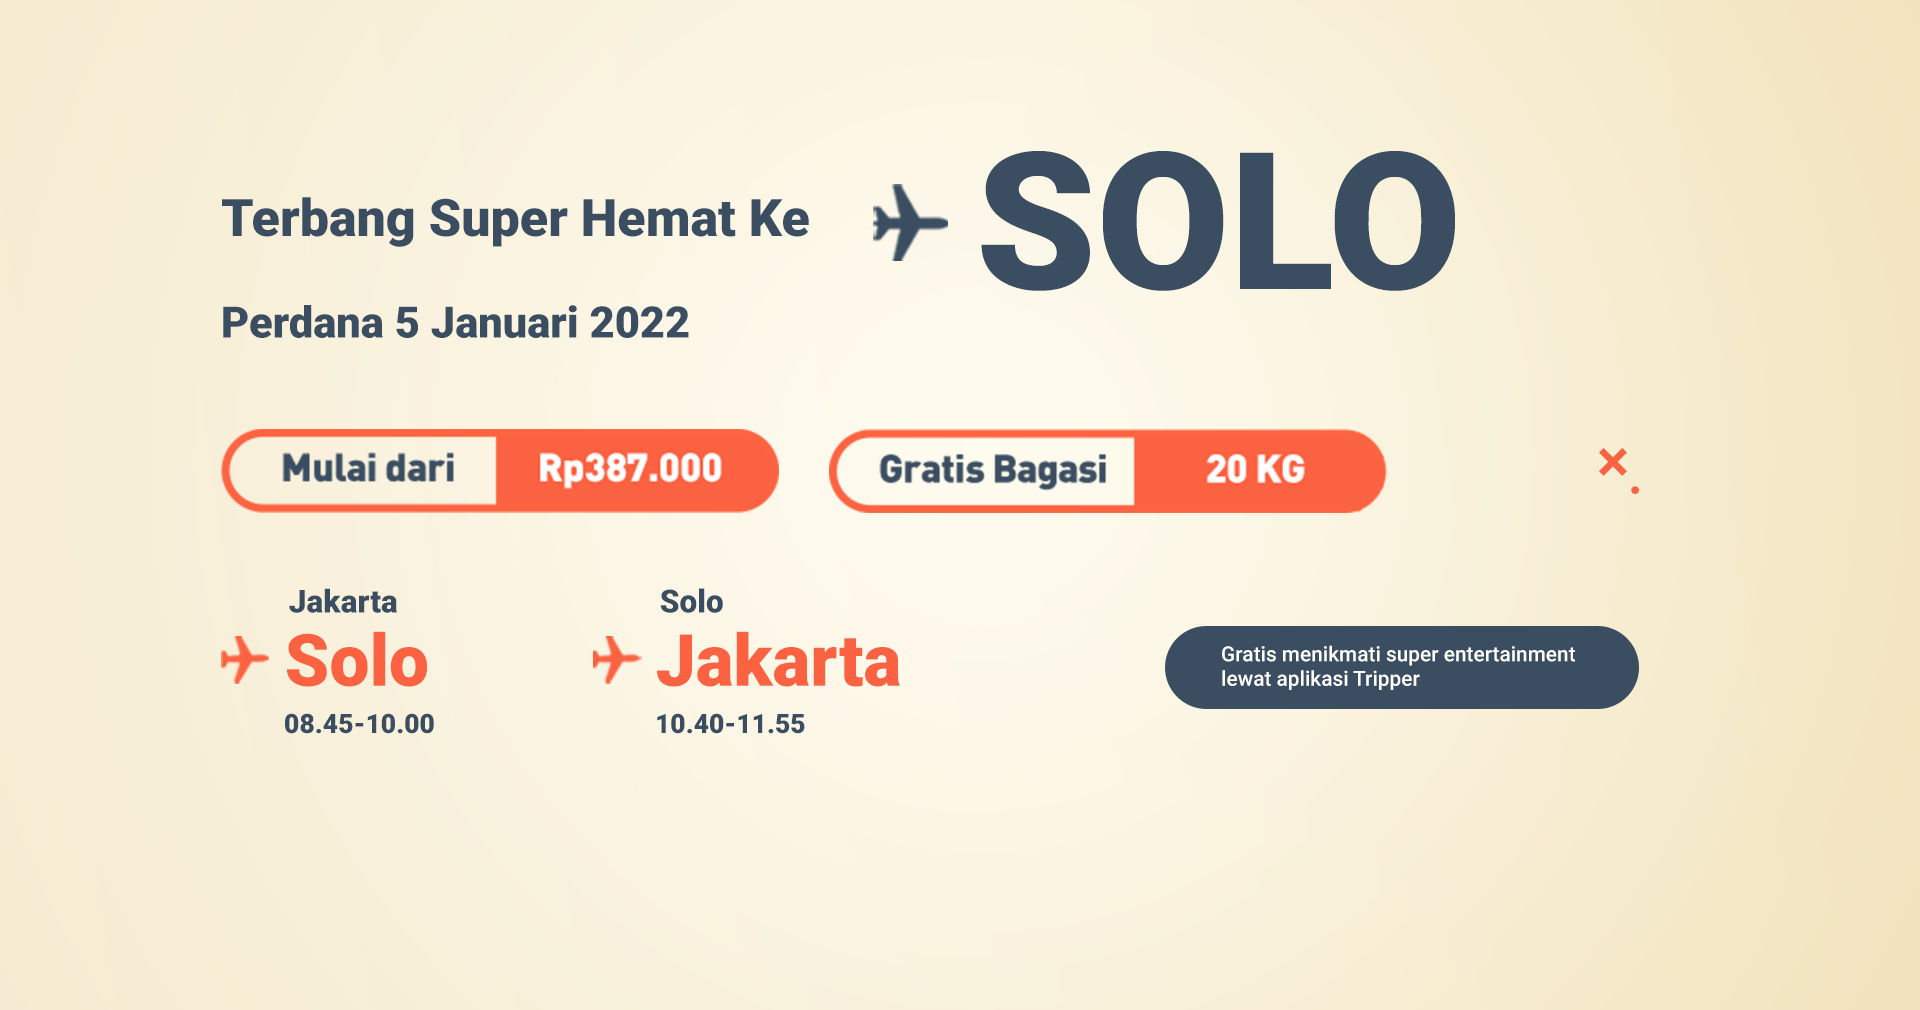 Super air jet indonesia website